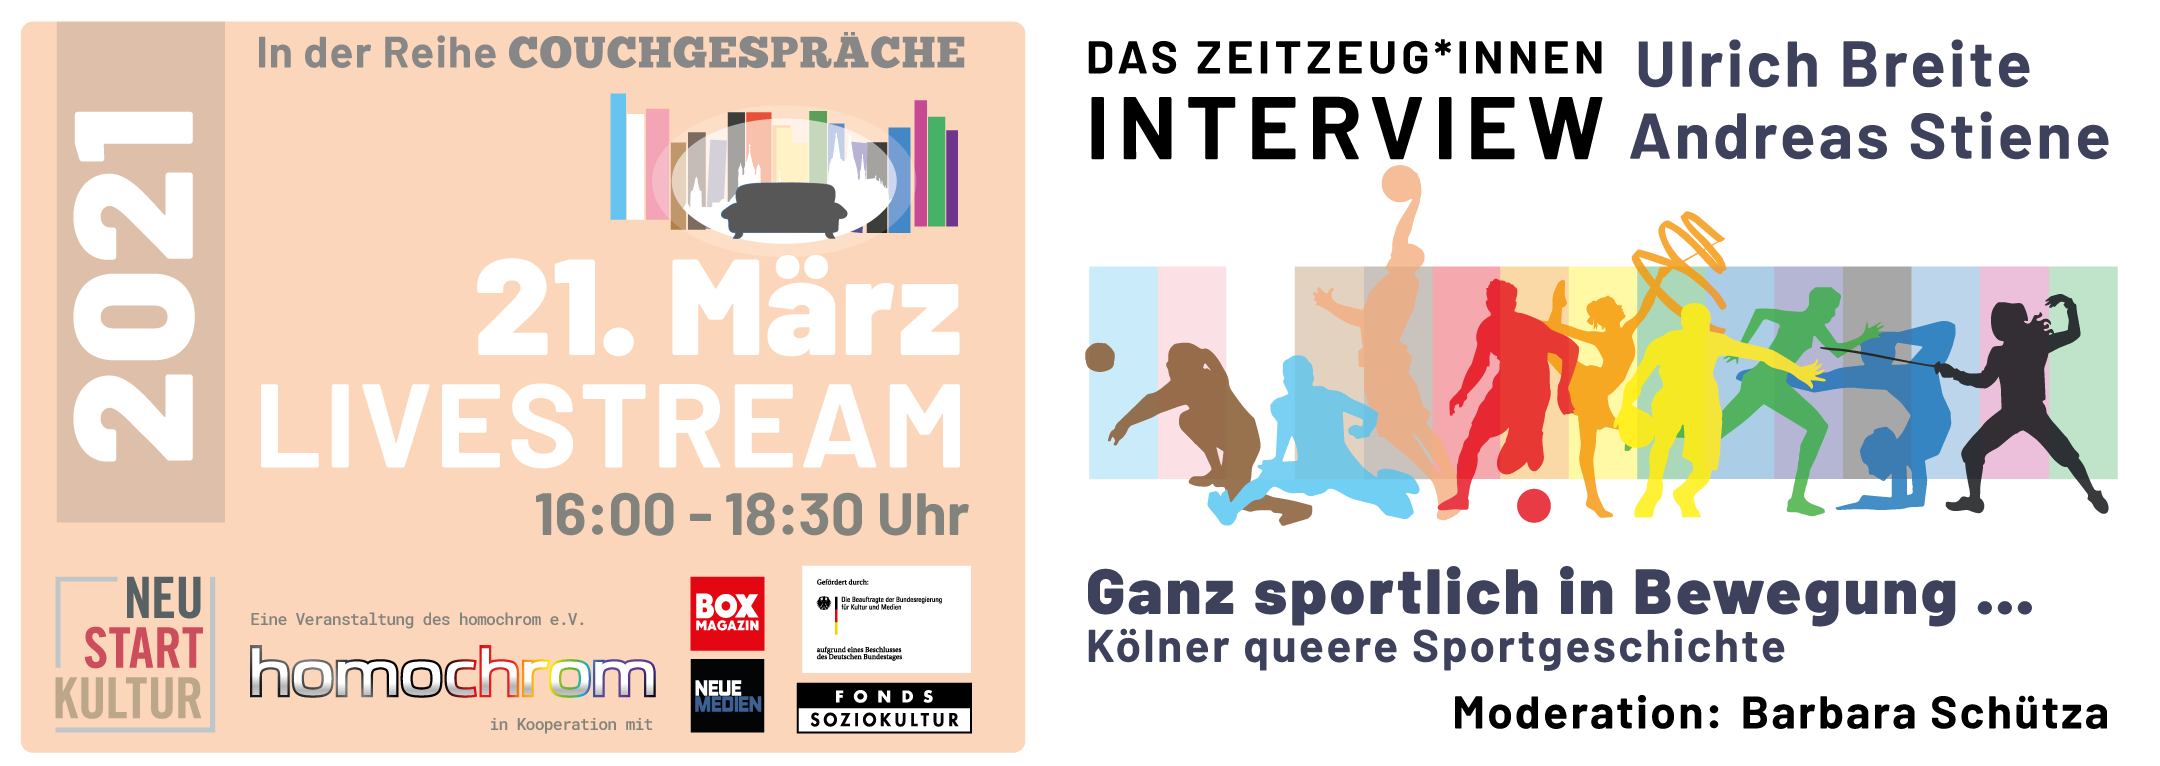 Couchgespräche März 2021 – Queerer Sport in Köln